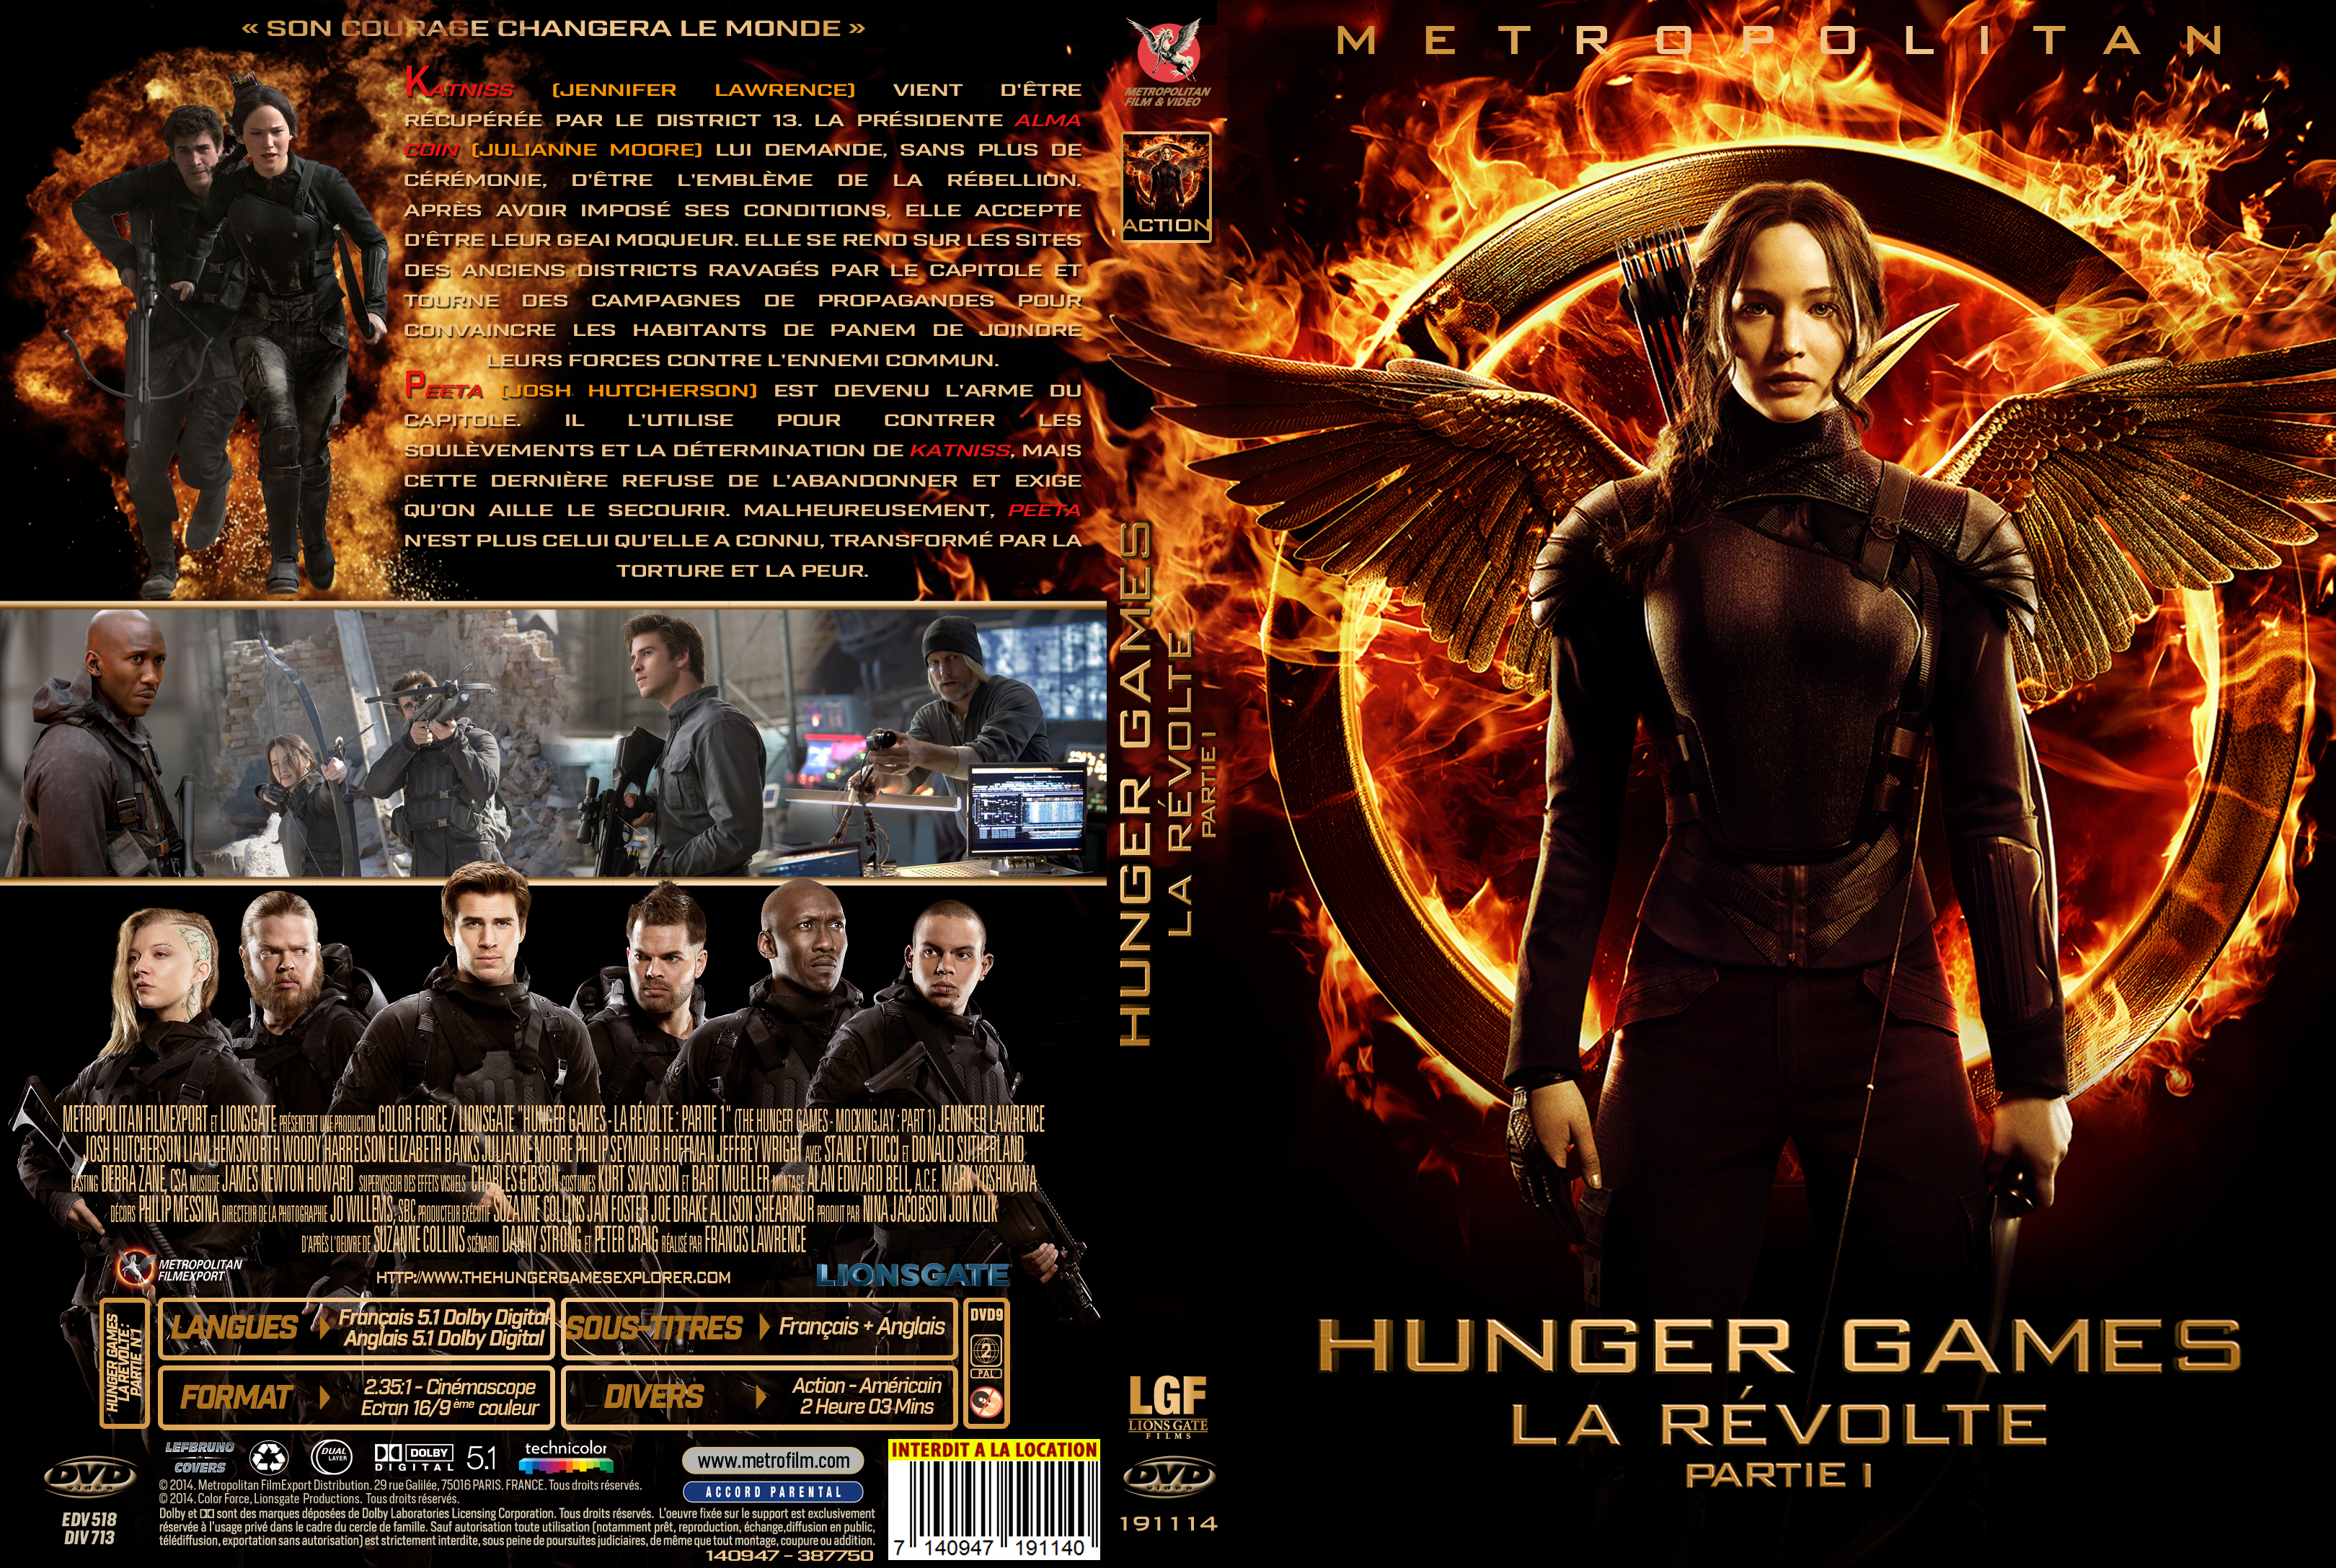 Jaquette DVD Hunger Games La Rvolte : Partie 1 custom